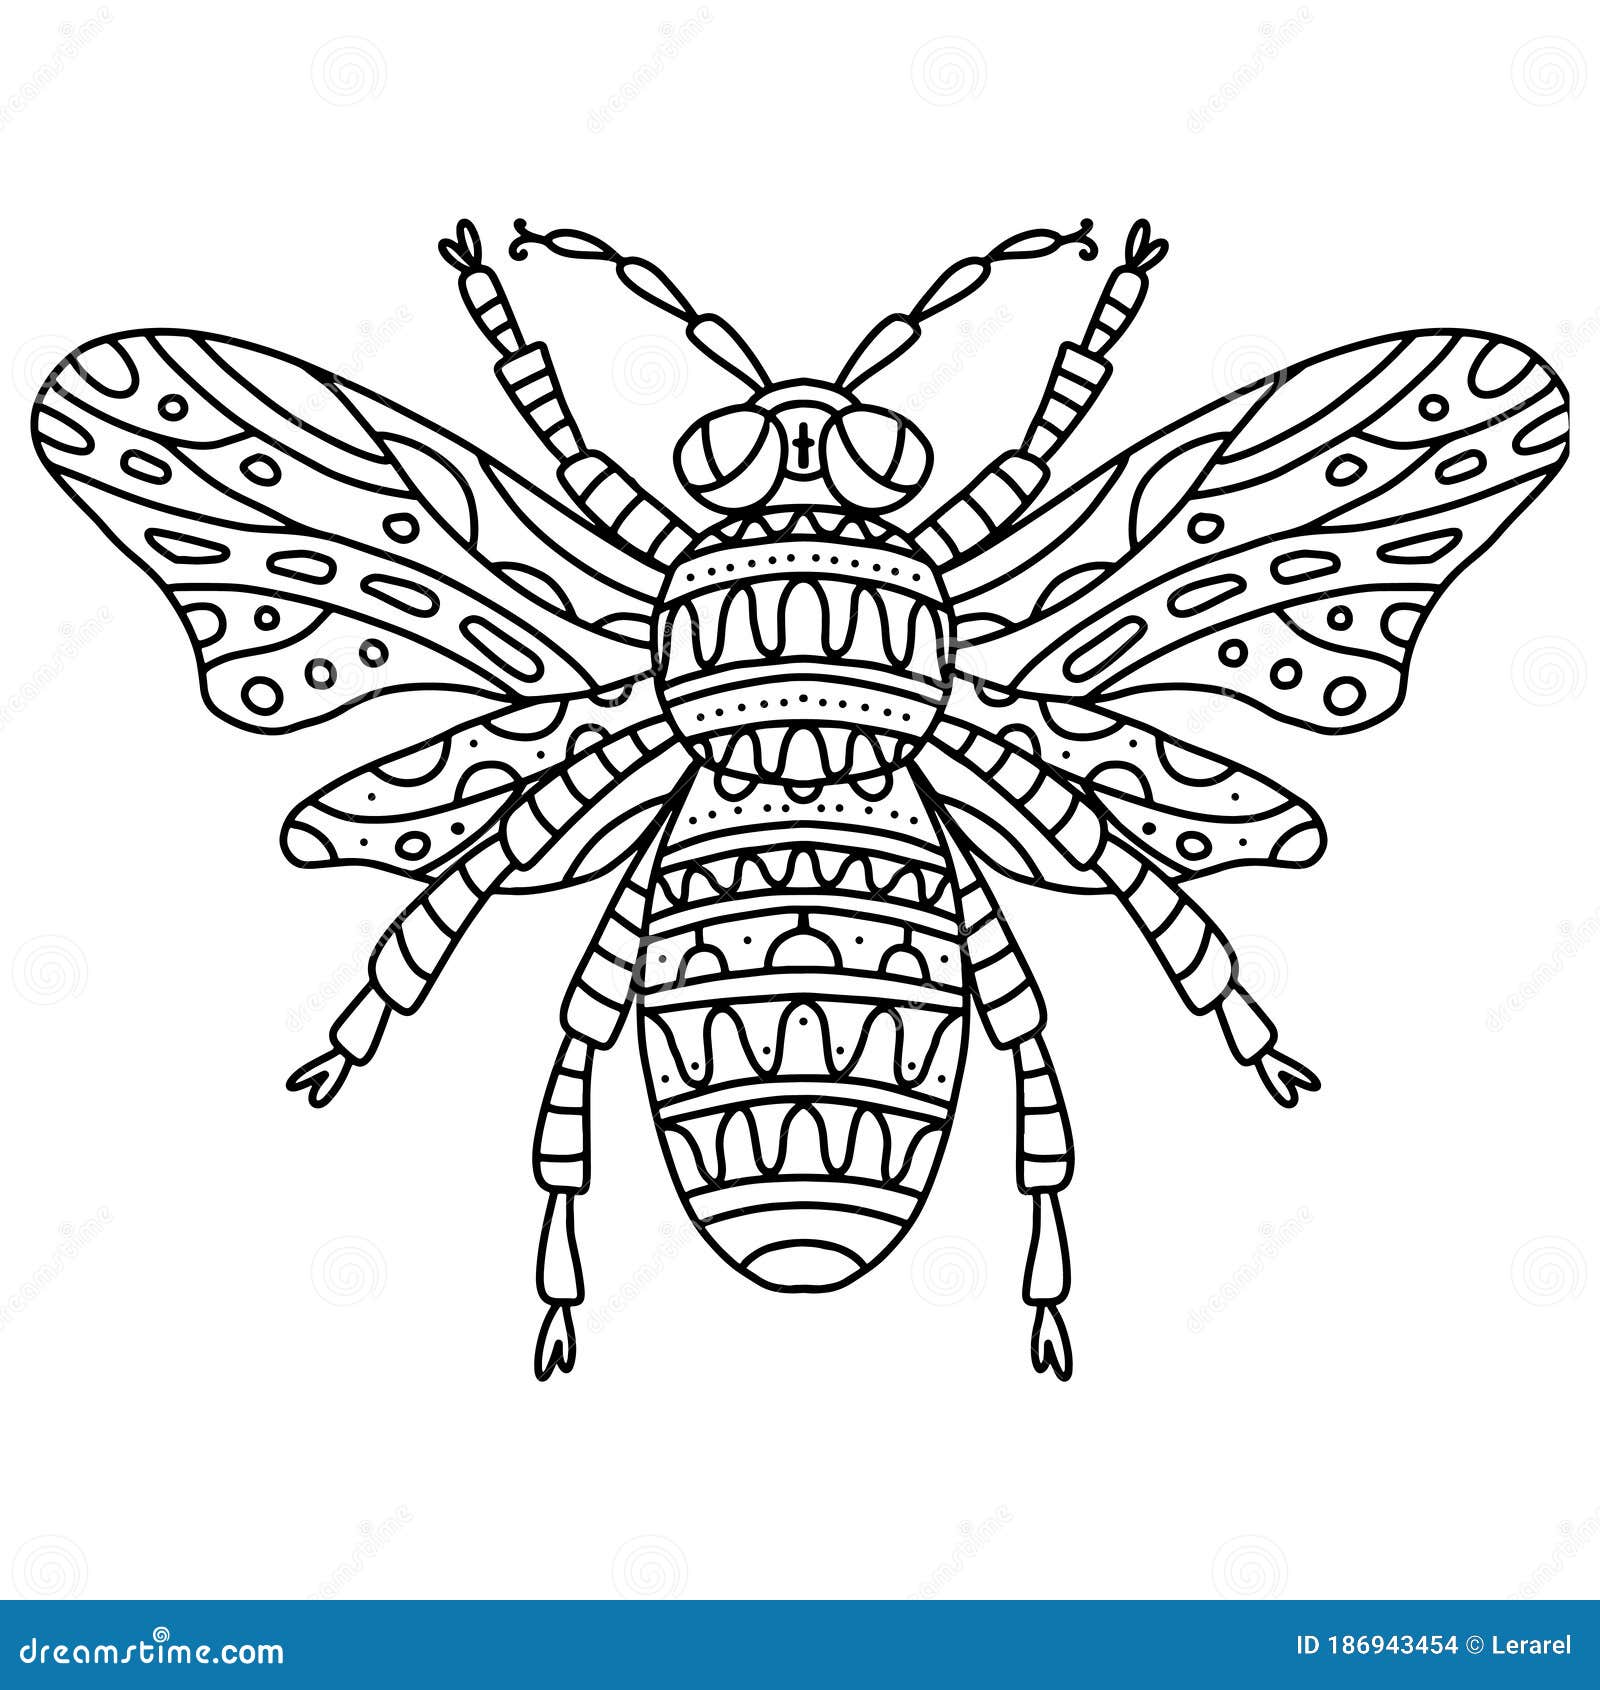 Un dibujo de una abeja con alas y alas.